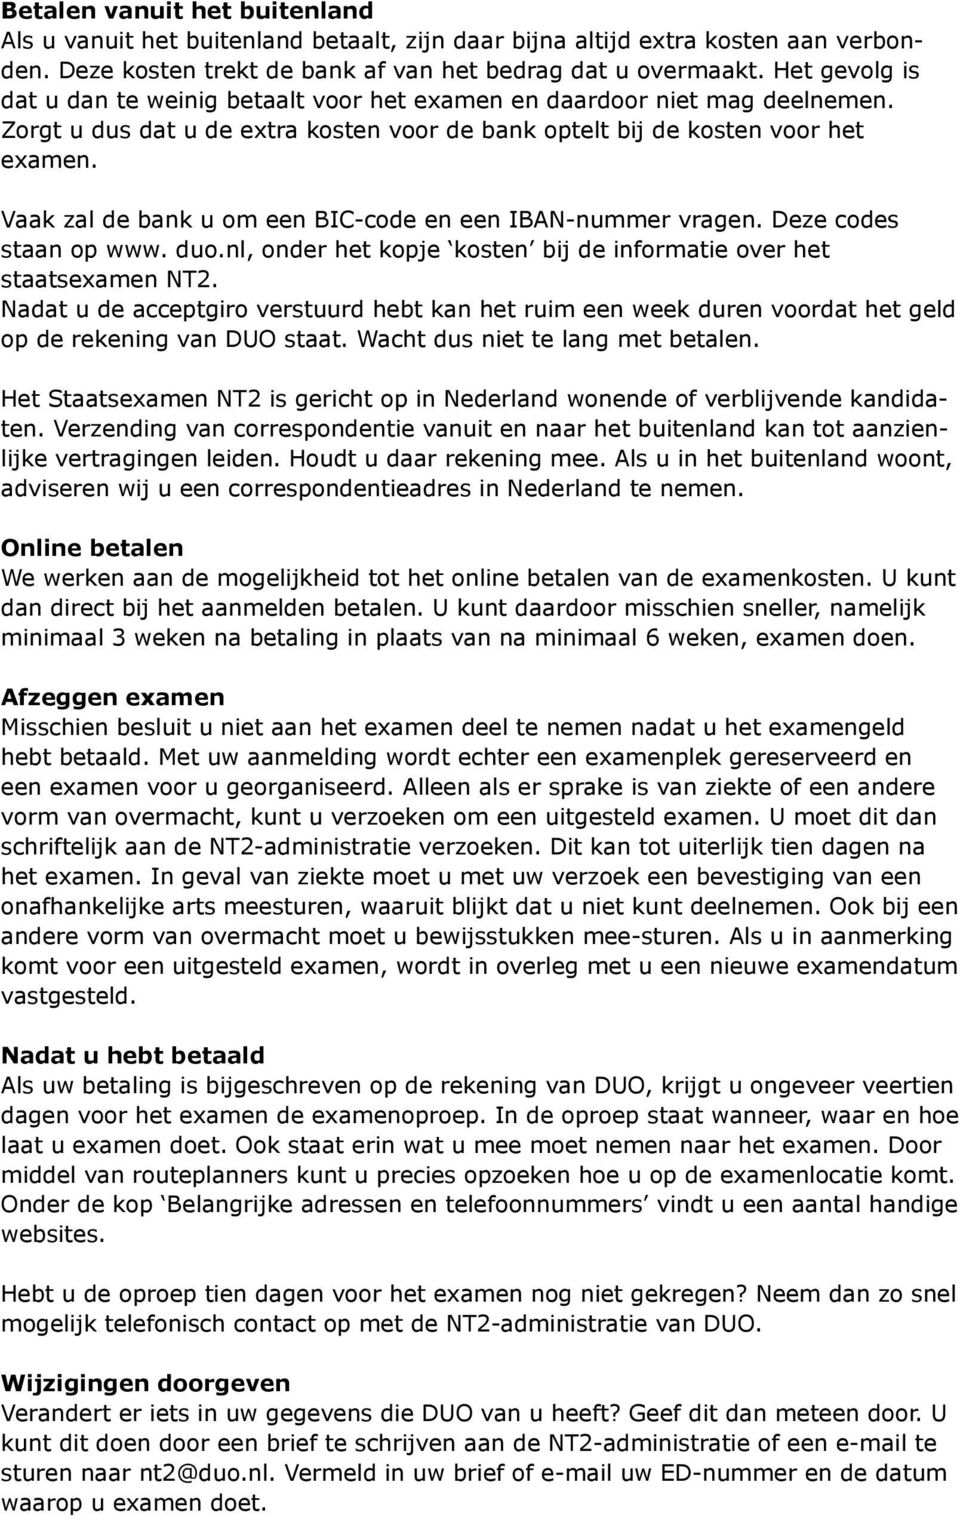 Vaak zal de bank u om een BIC-code en een IBAN-nummer vragen. Deze codes staan op www. duo.nl, onder het kopje kosten bij de informatie over het staatsexamen NT2.